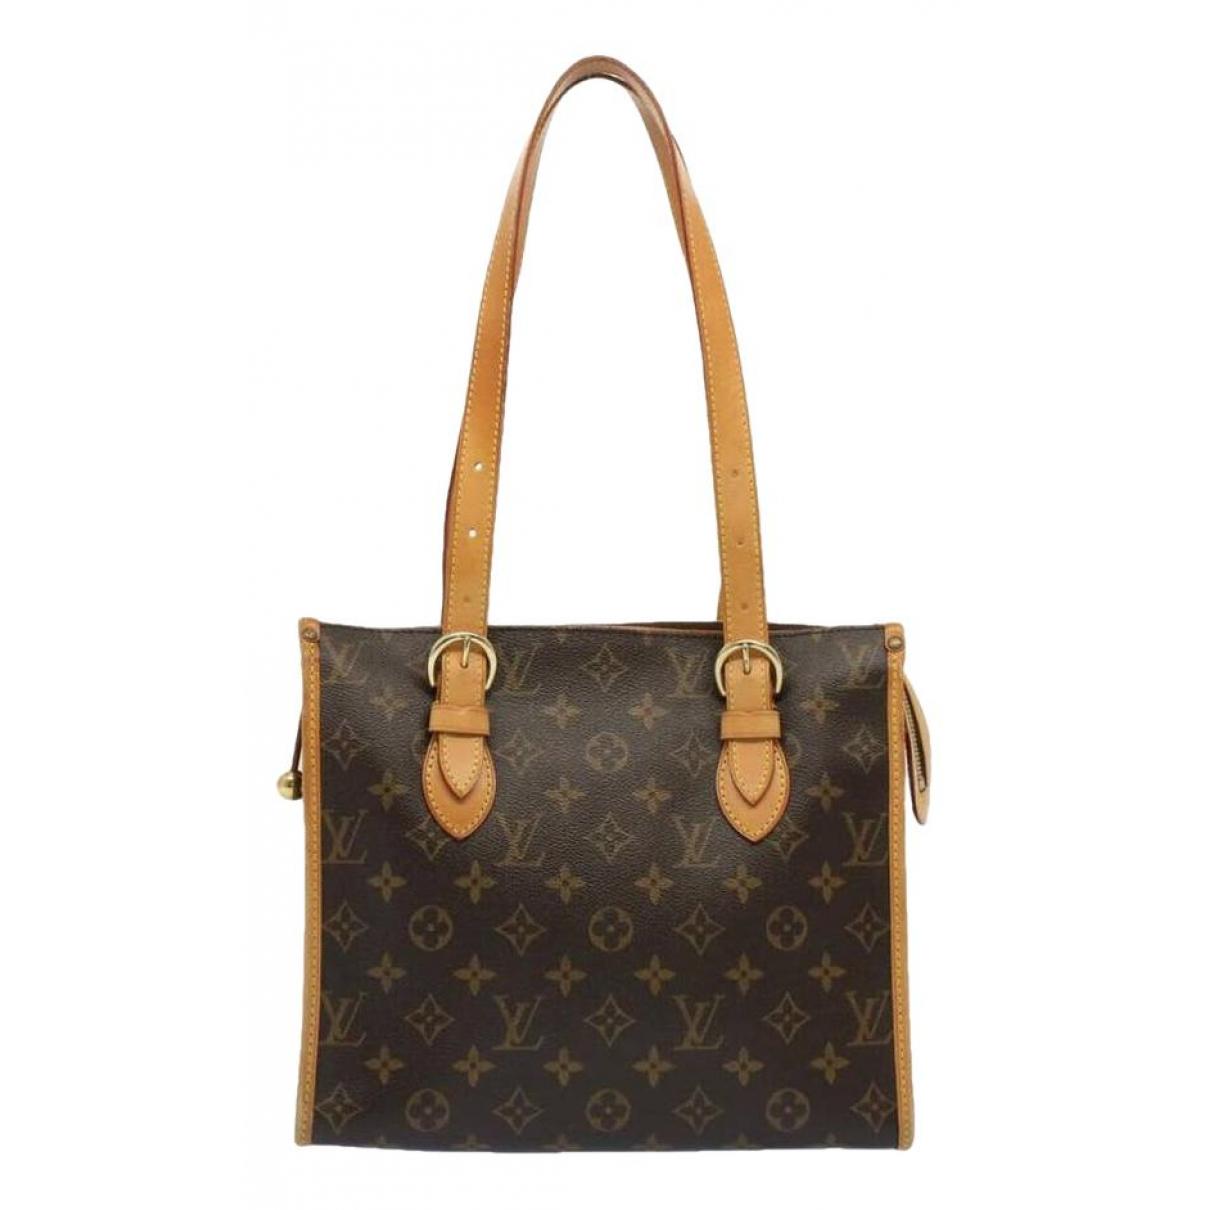 Authentic Vintage Louis Vuitton In Women'S Bags & Handbags for sale